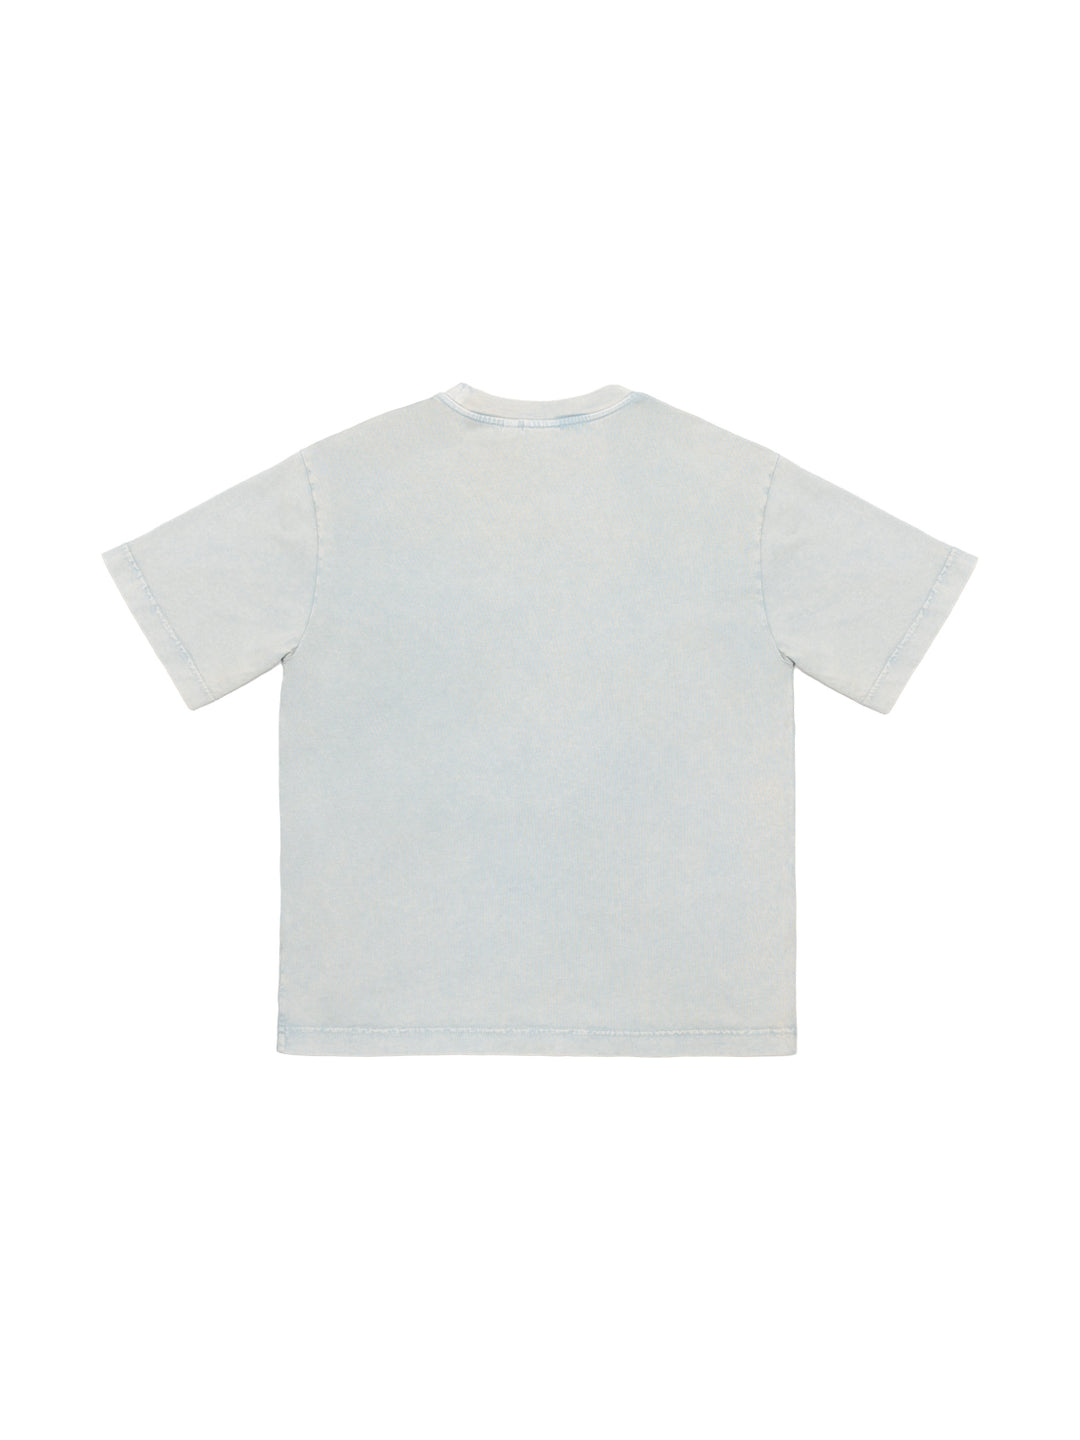 T-Shirt mit Brusttasche - Himmelblau